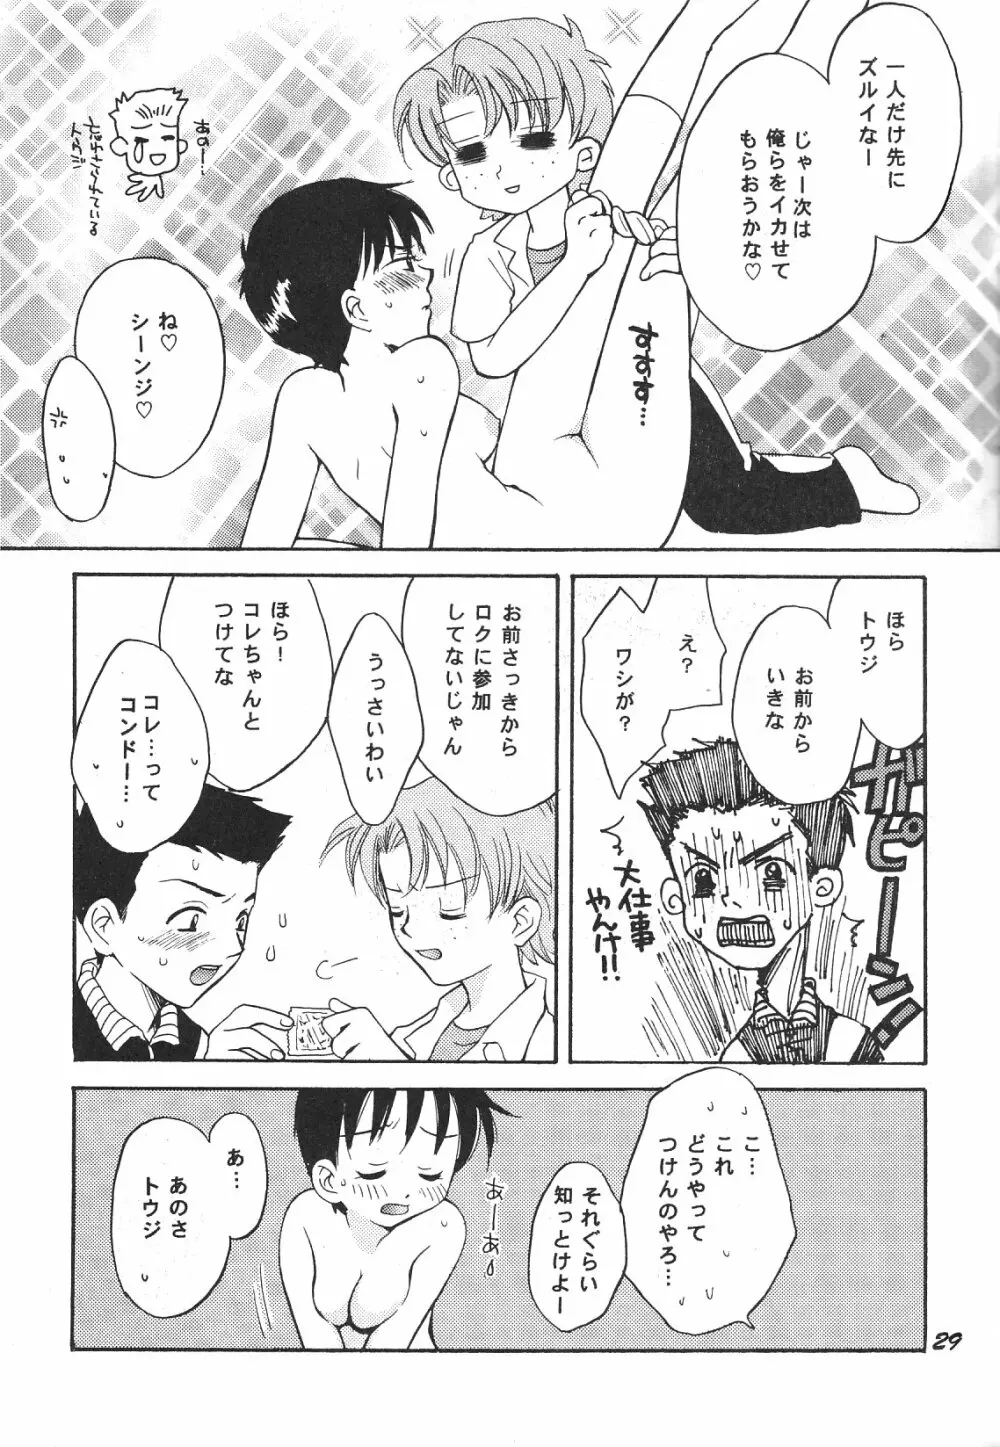 Maniac Juice 女シンジ再録集 ’96-’99 29ページ